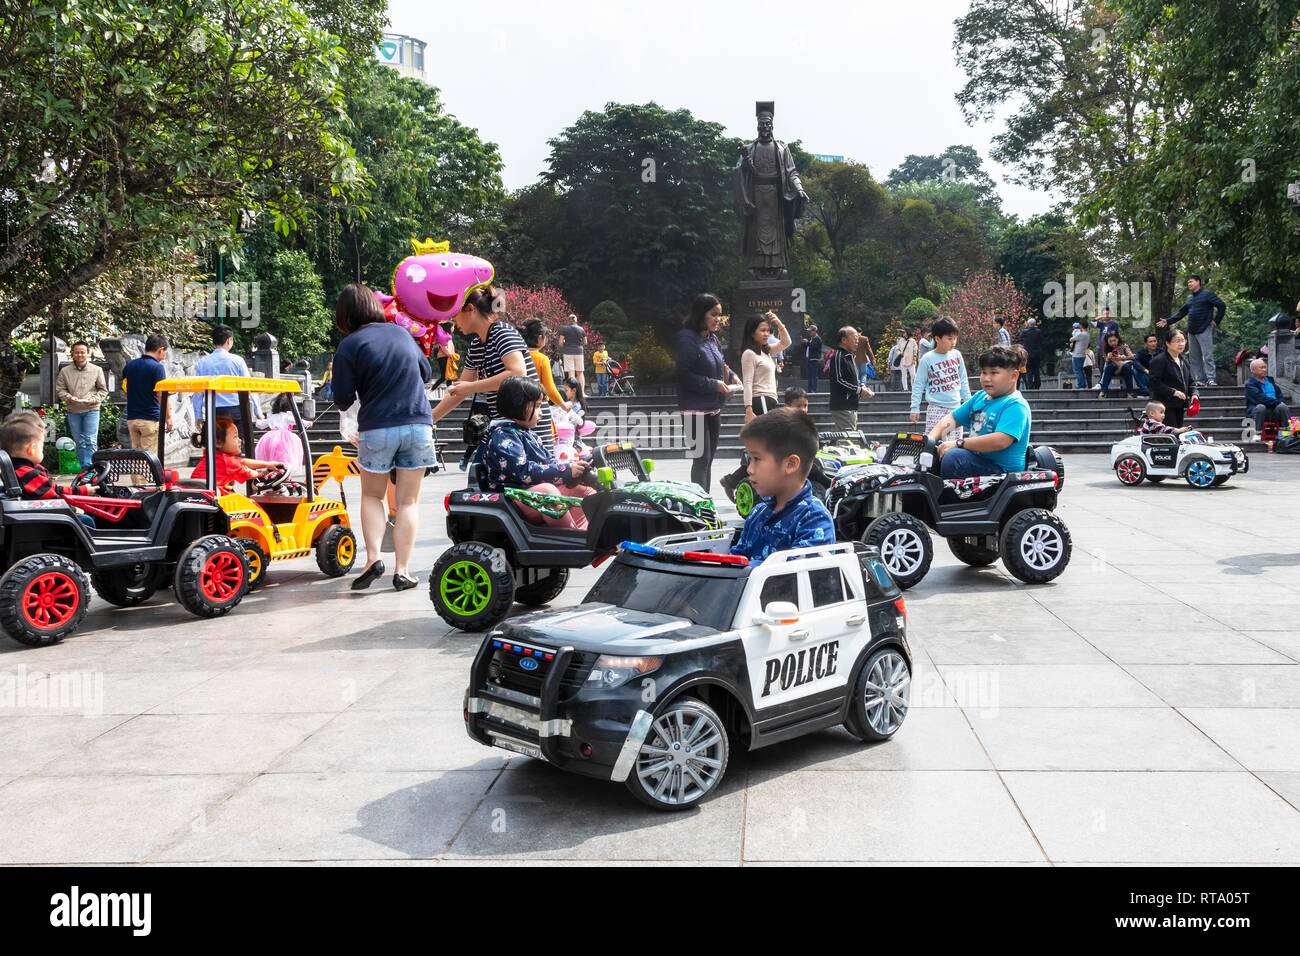 Les enfants de la police Electric ride sur les voitures - Chine